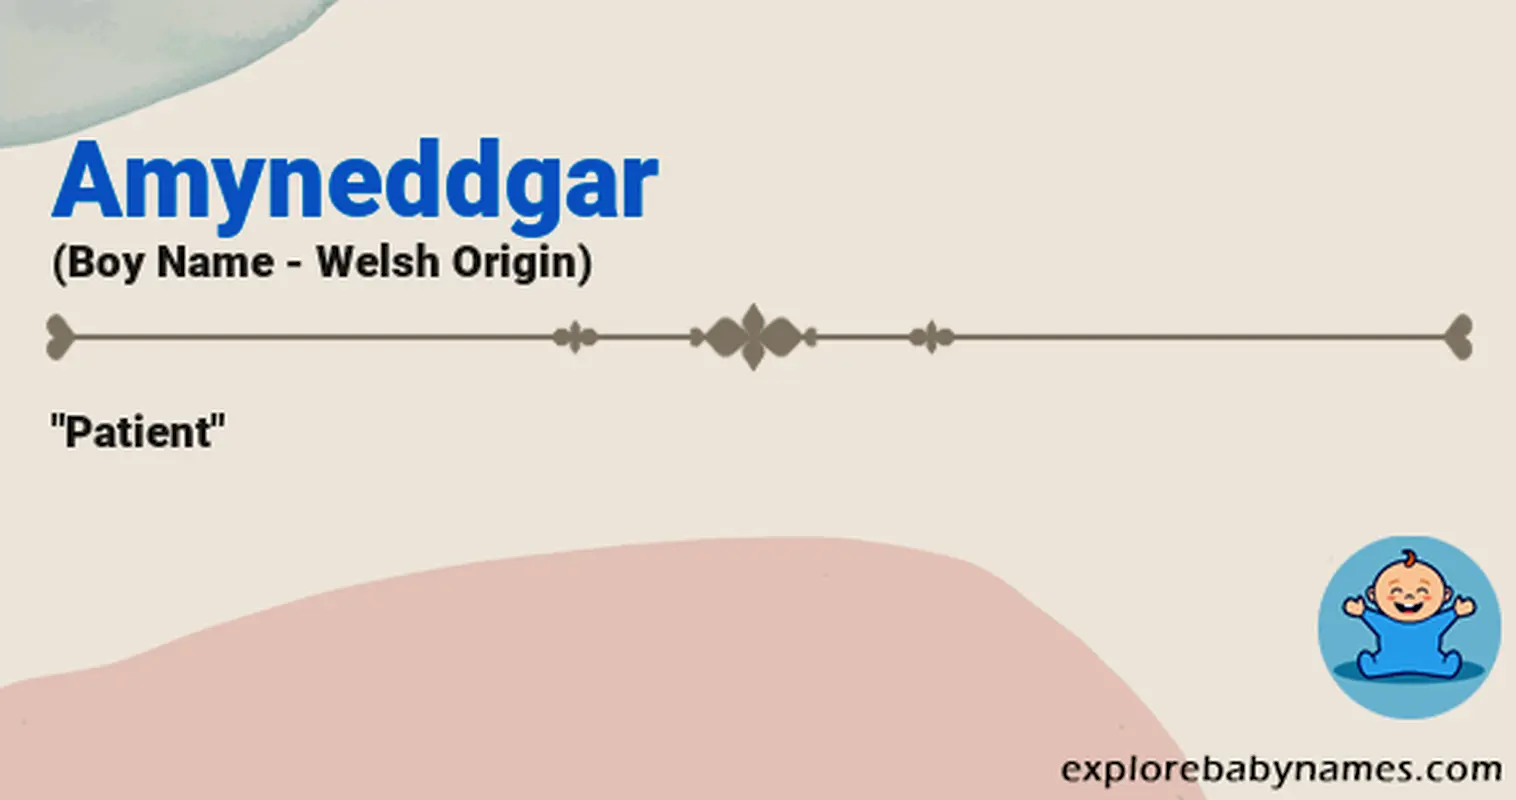 Meaning of Amyneddgar